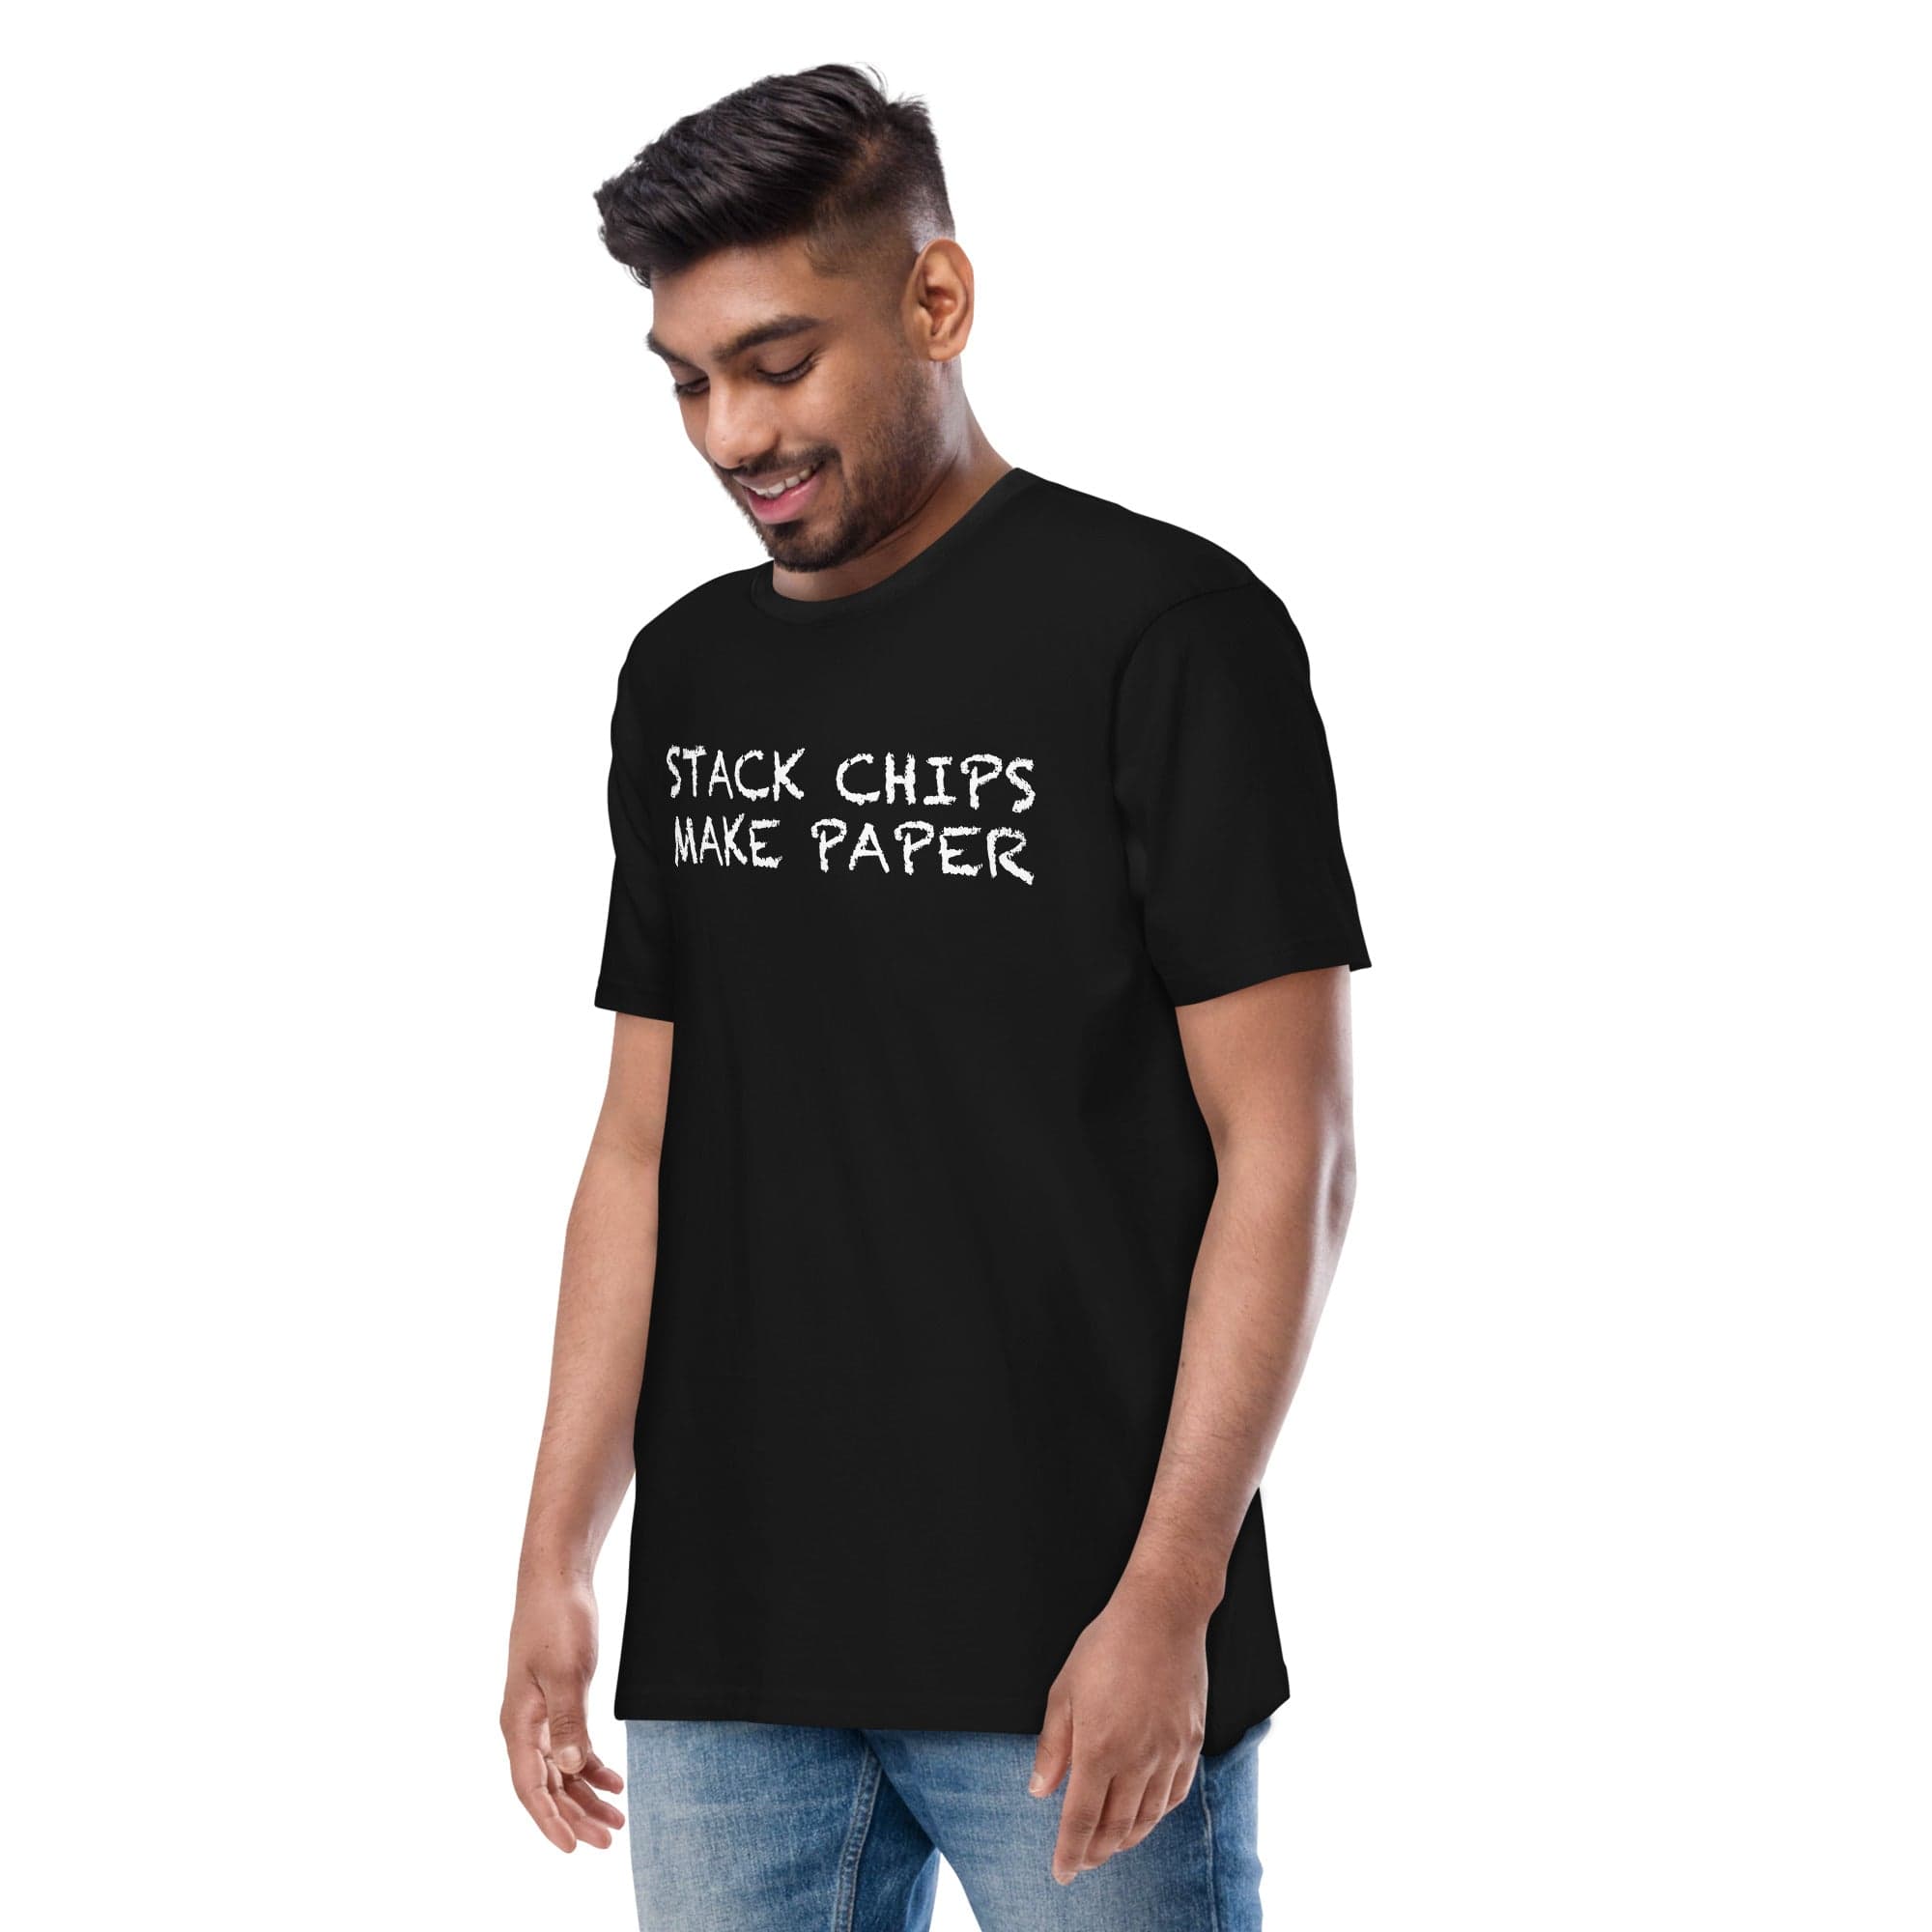 DRESSCODE T-Shirt Black / S Stack Chips, Make paper